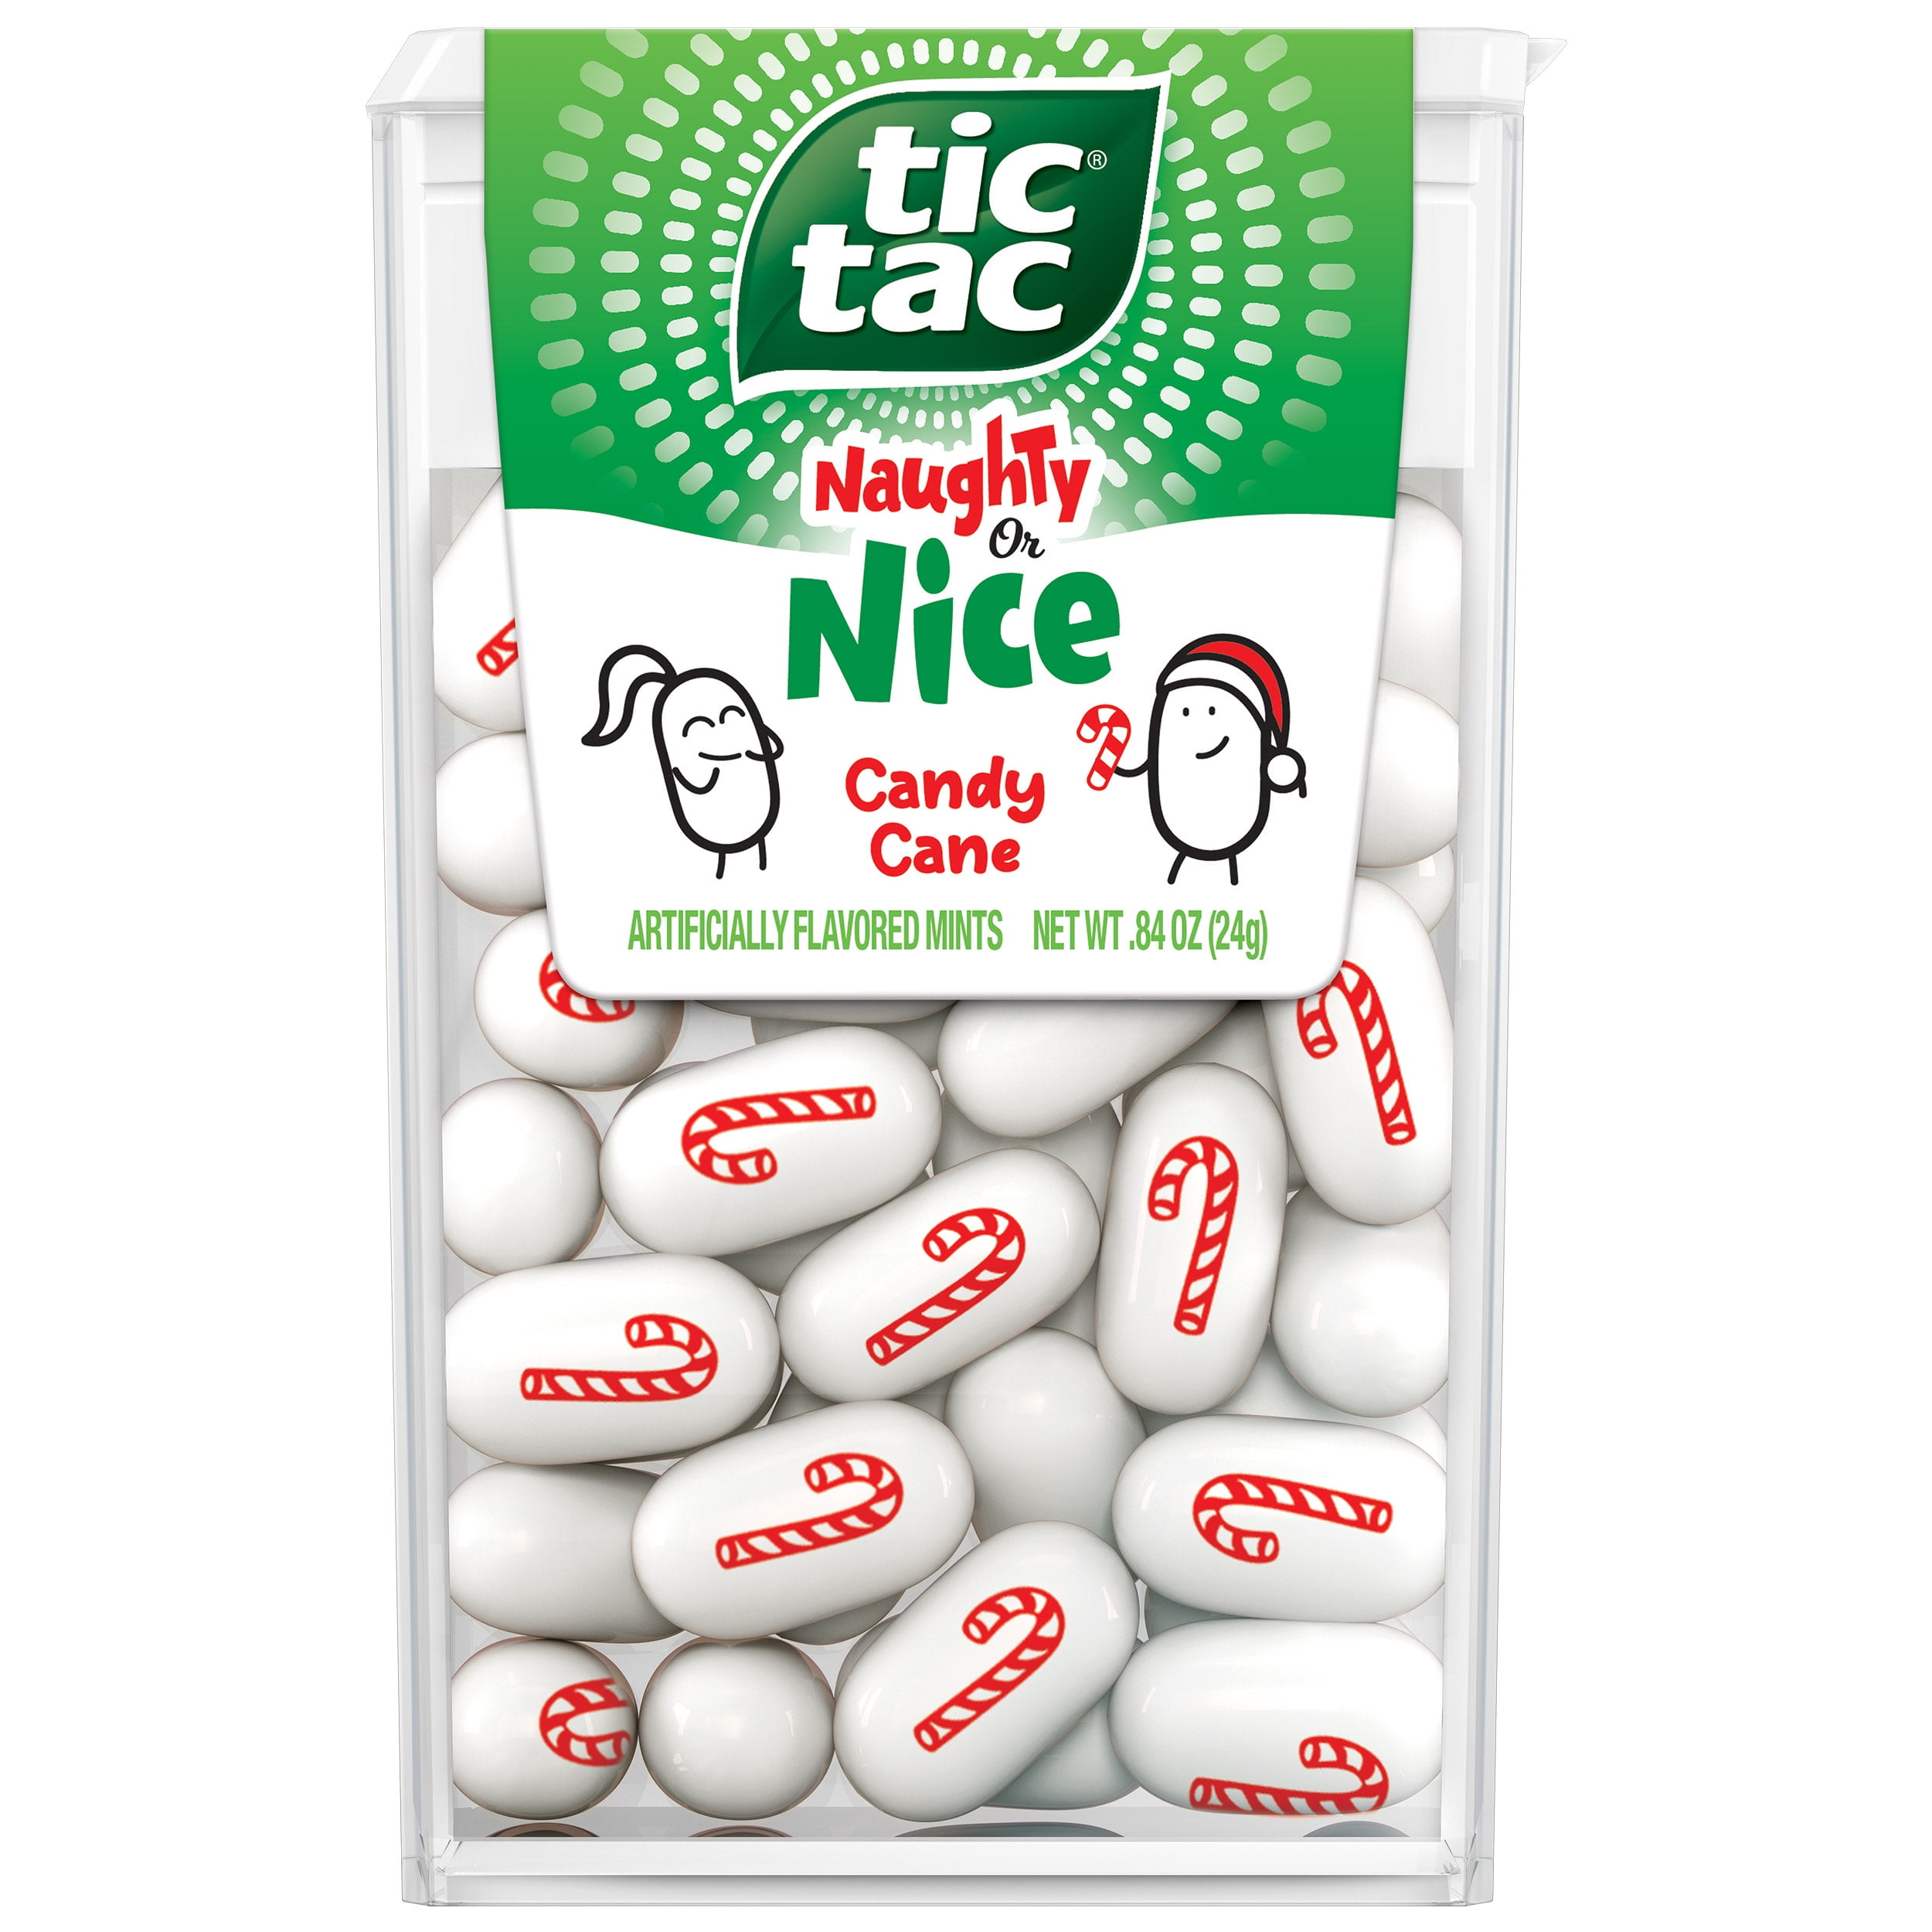 Tic Tac Sprite - 3.4oz - Blair Candy Company